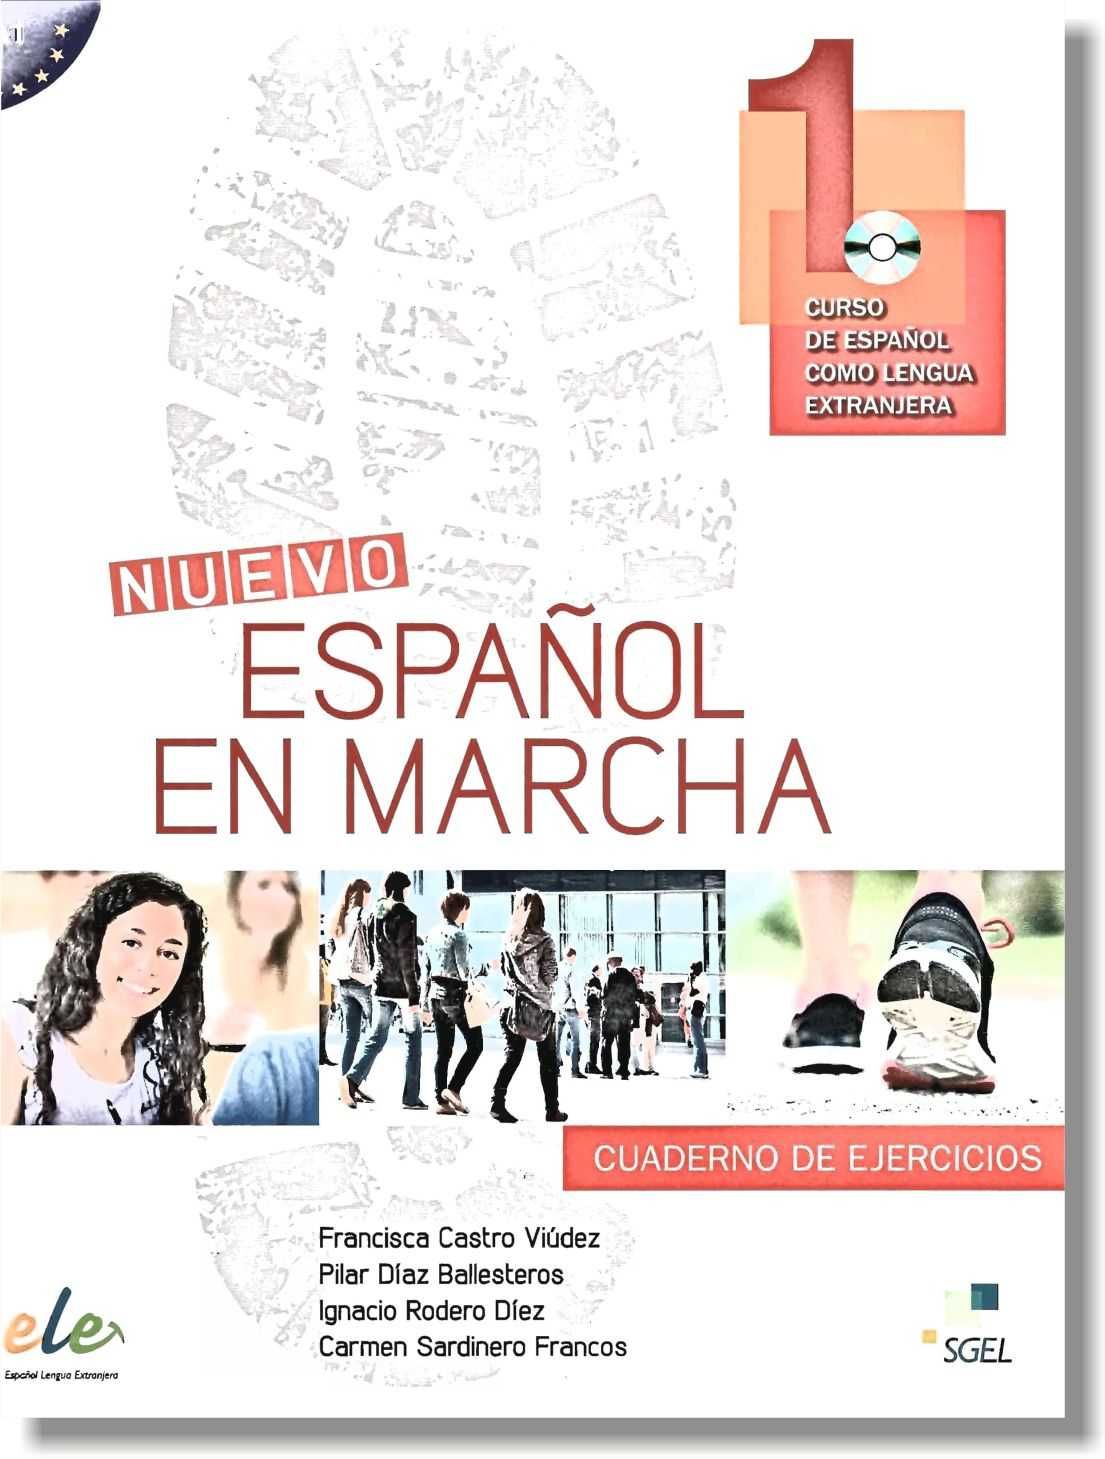 Цветные учебники испанского языка NUEVO Espanol en marcha A1, A2, B2